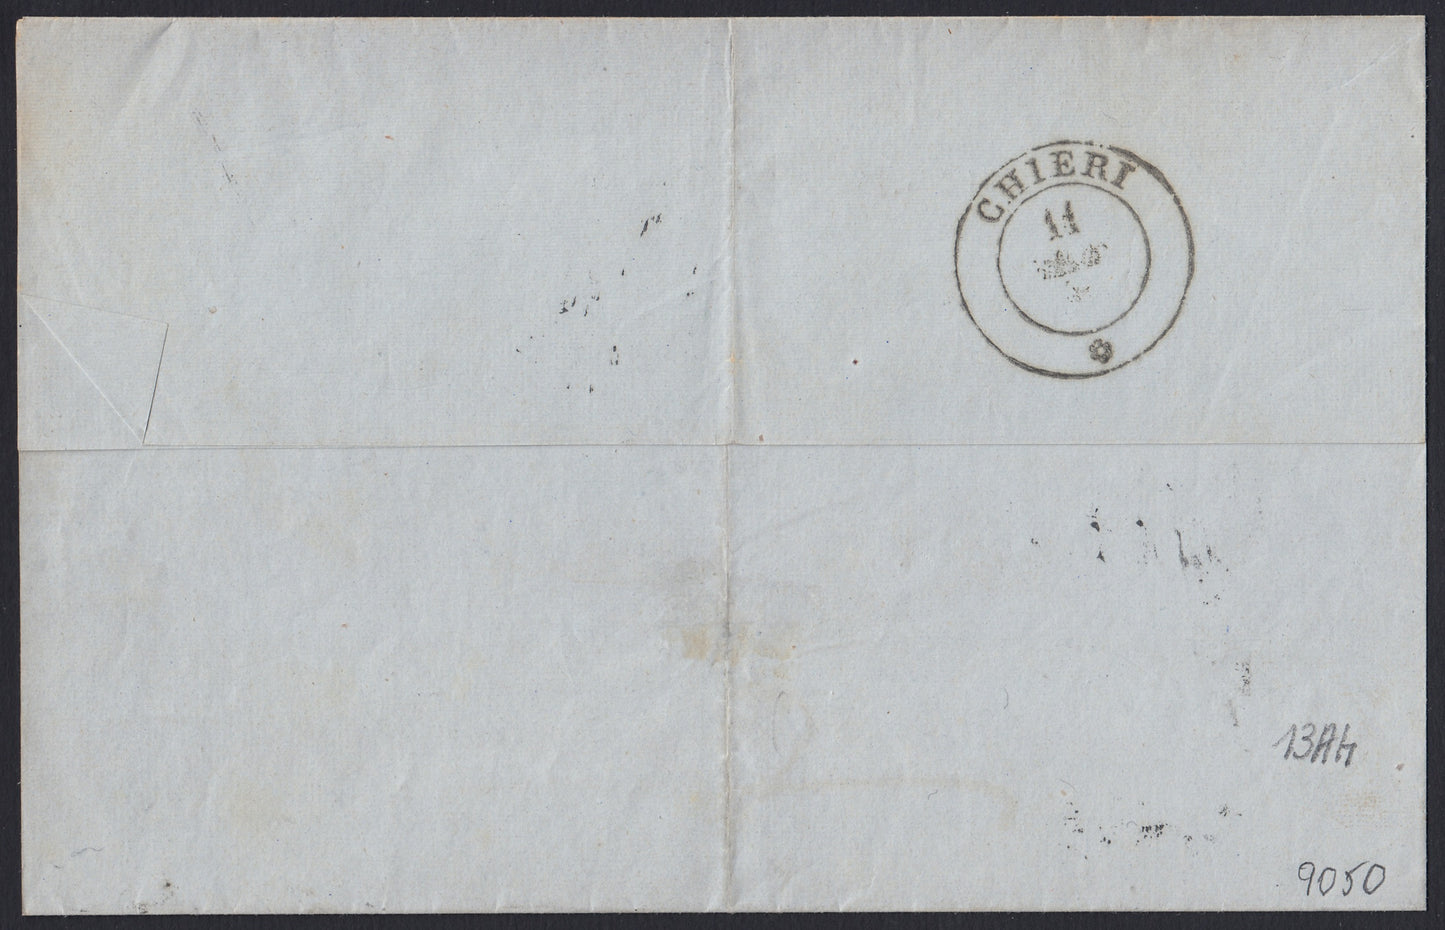 175 - 1858 - Circular impresa enviada desde Turín a Chieri el 9/11/58, franqueada con c. 5 verde amarillo impresión defectuosa I composición edición 1857 aislada, muy rara y muy bella. (13Ah).